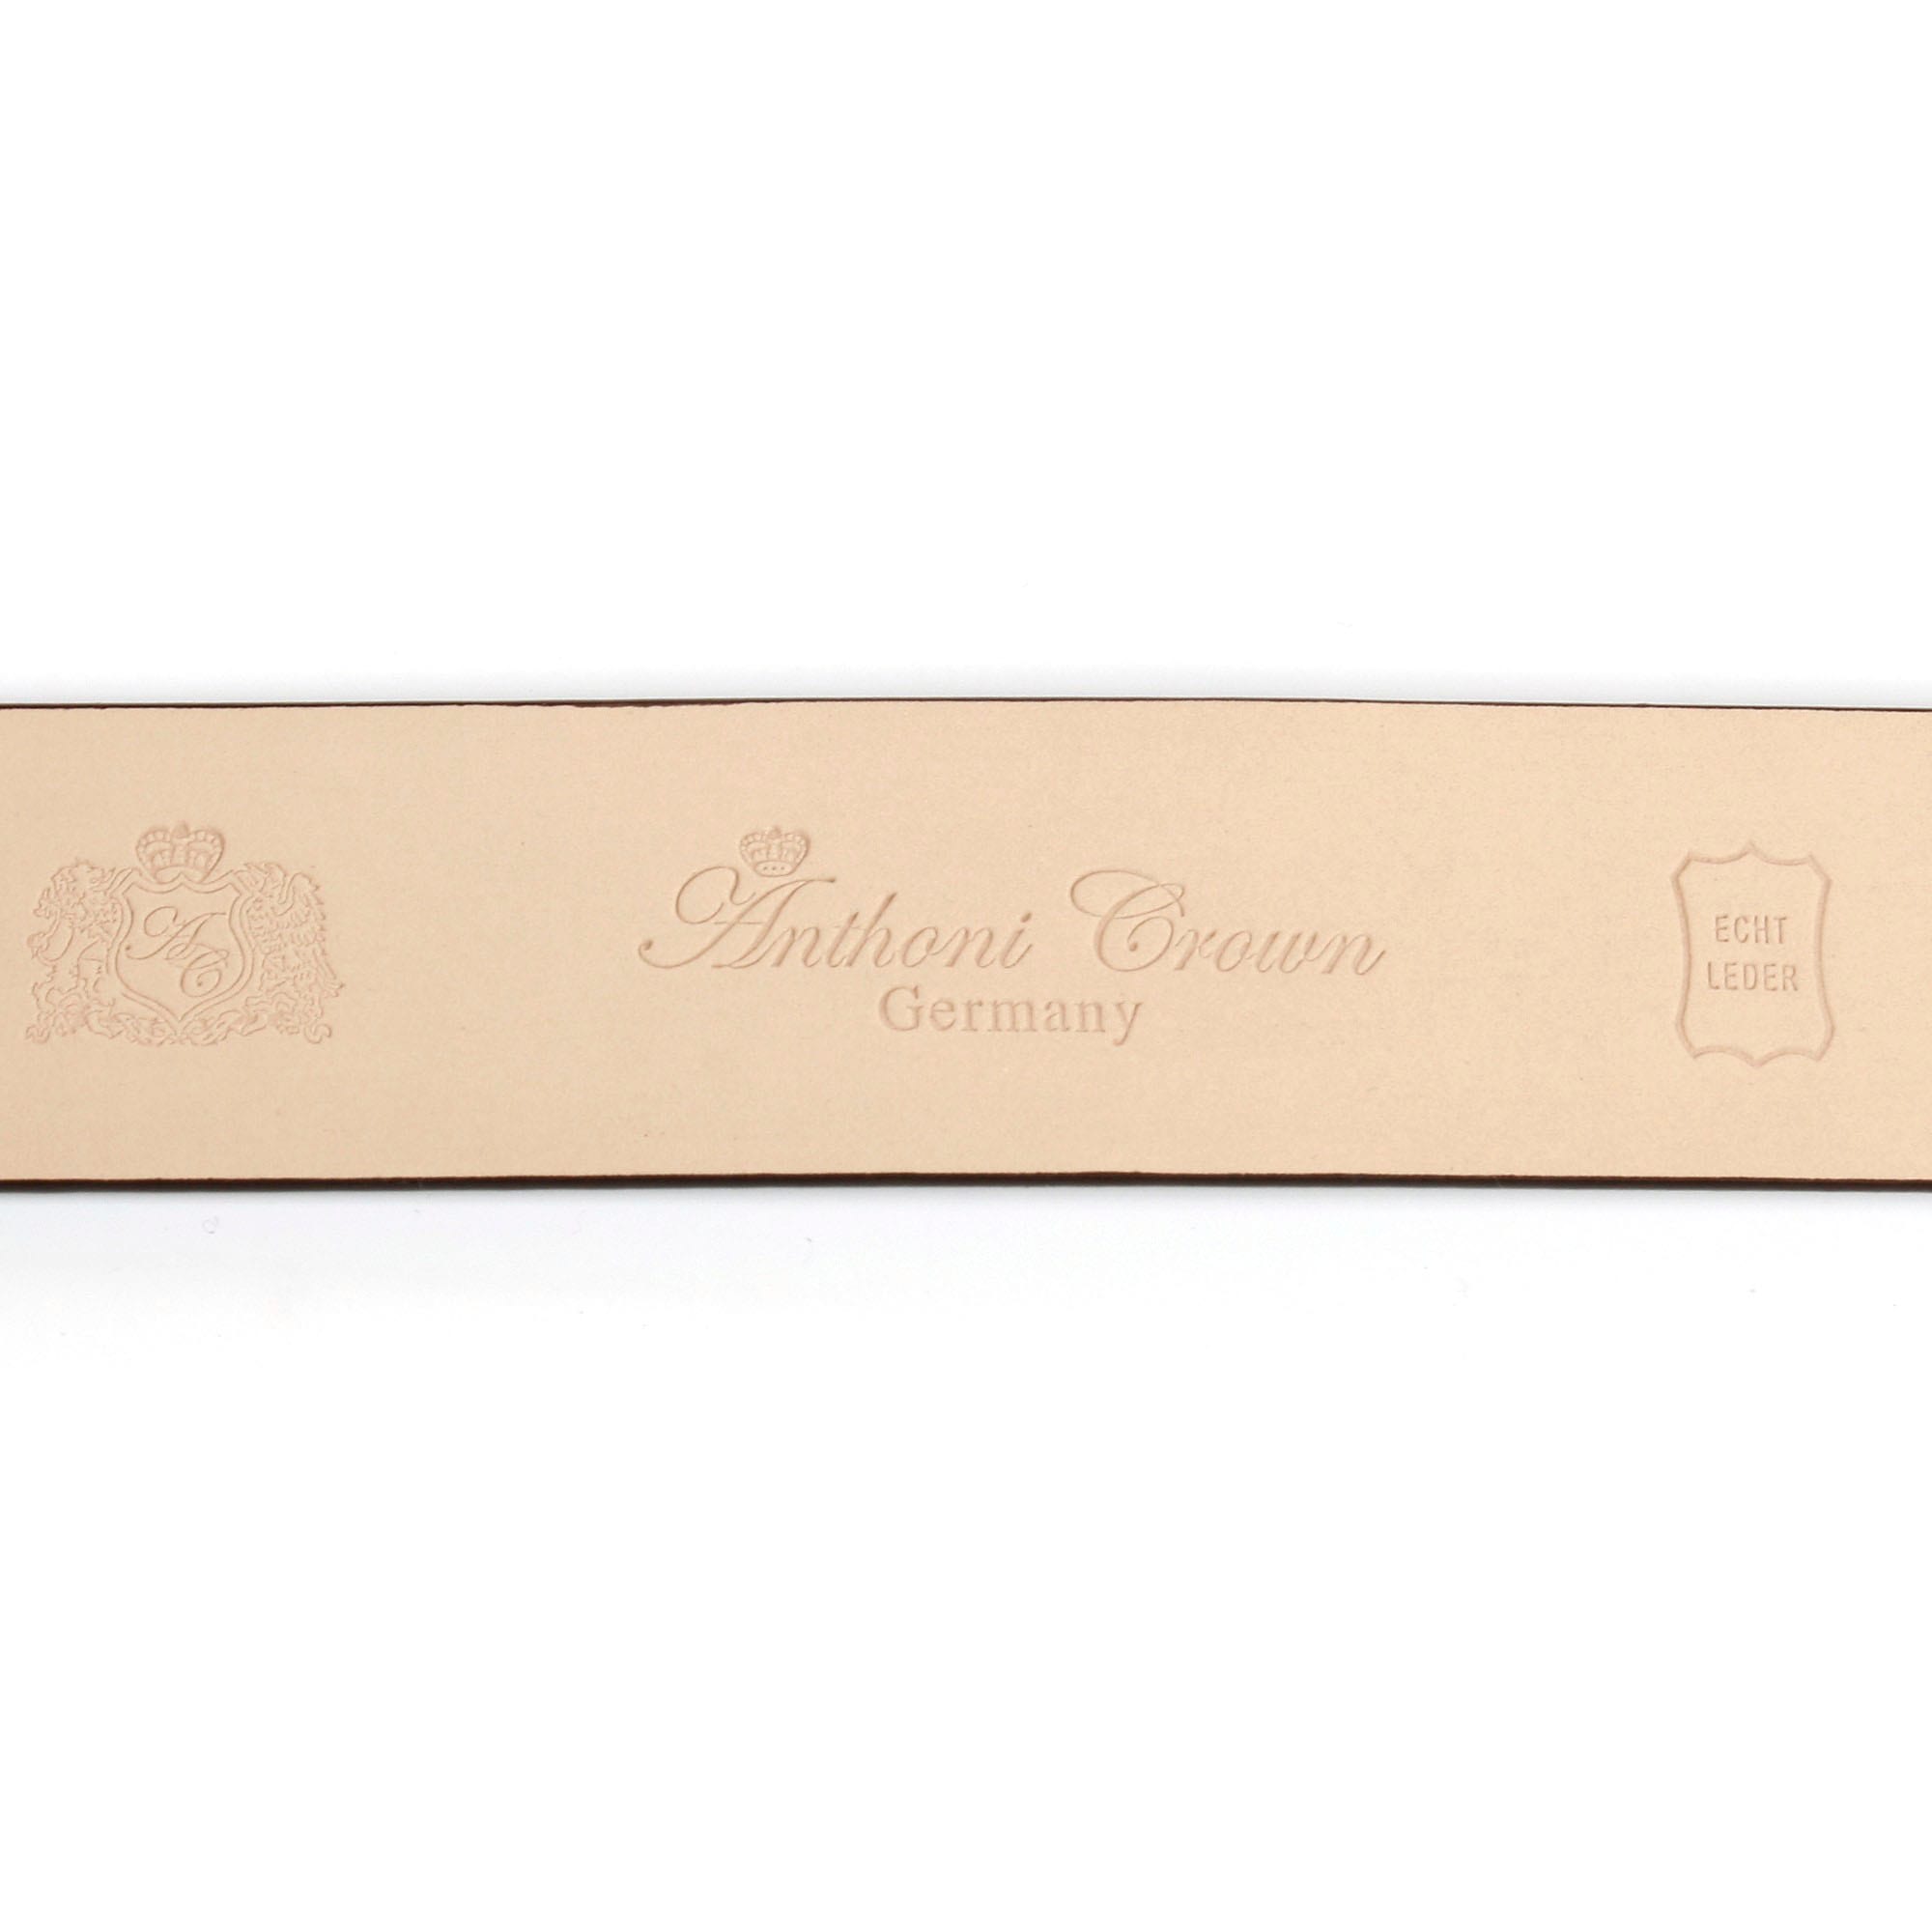 Crown silberfarbener Automatik-Schließe Ledergürtel mit Strass-Steine Anthoni